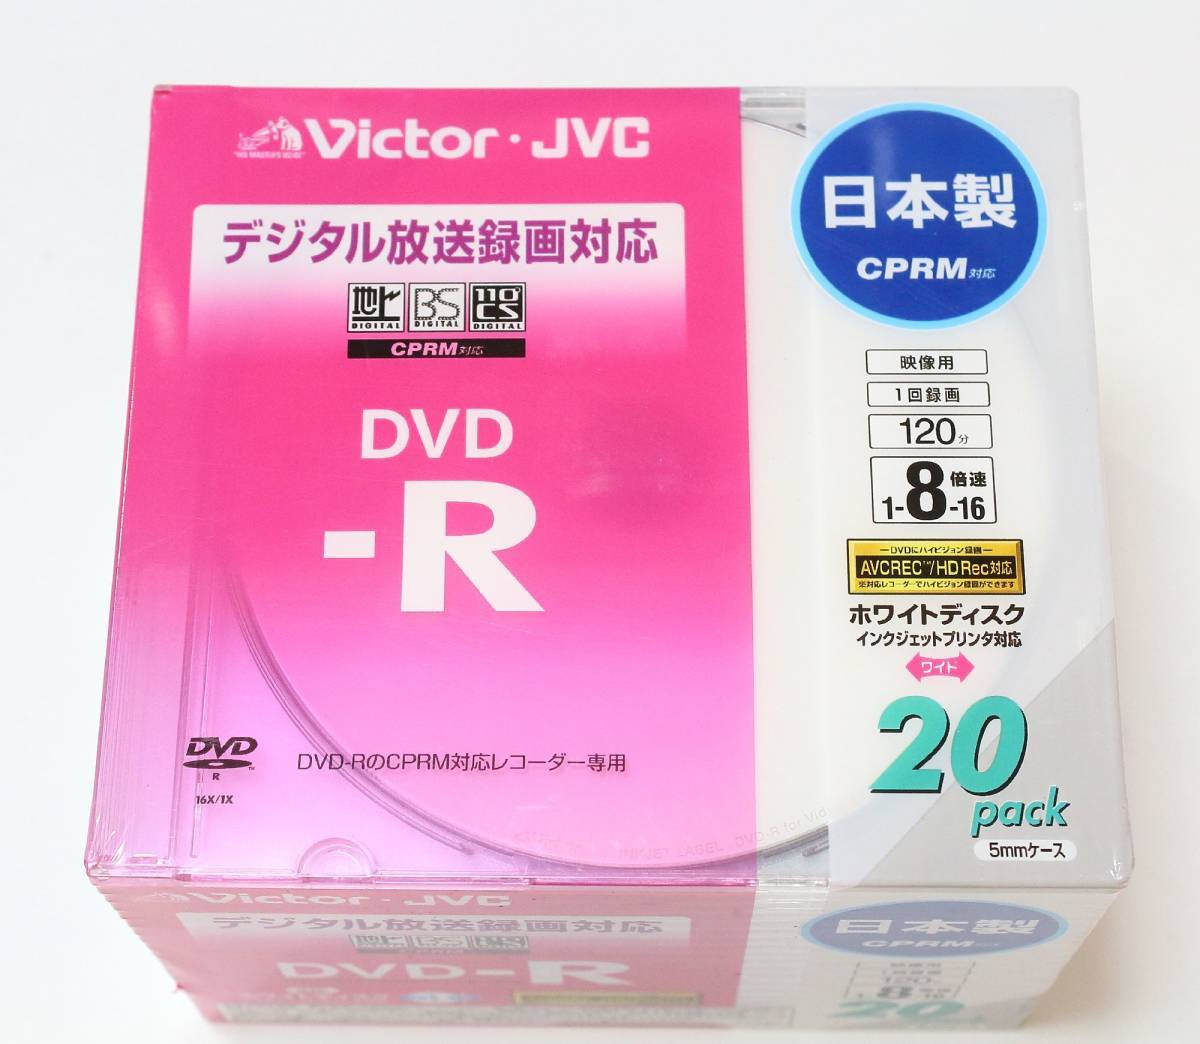 ◆【未使用】 Victor JVCケンウッド 録画用DVD-R 120分 4.7GB 20枚×5 VD-R120CM20 計100枚セット ◆NHC09048　16倍速 CPRM対応_画像2